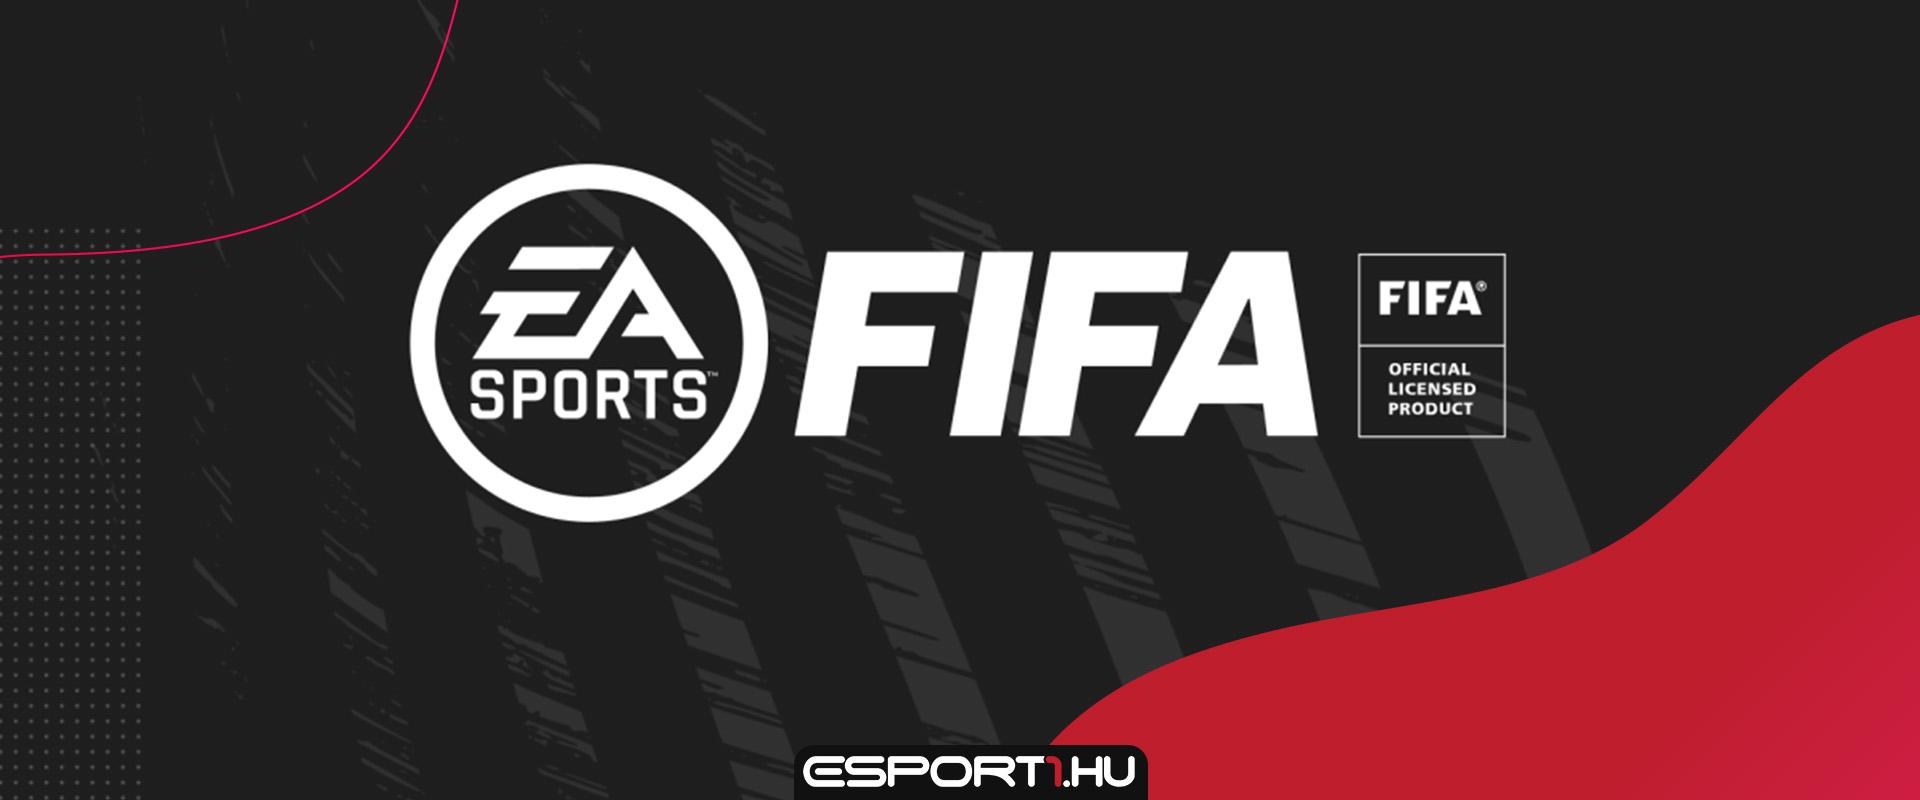 Online Co-Op mód jöhet a FIFA 22-ben? Egy hirdetés érdekes részletet fedett fel!